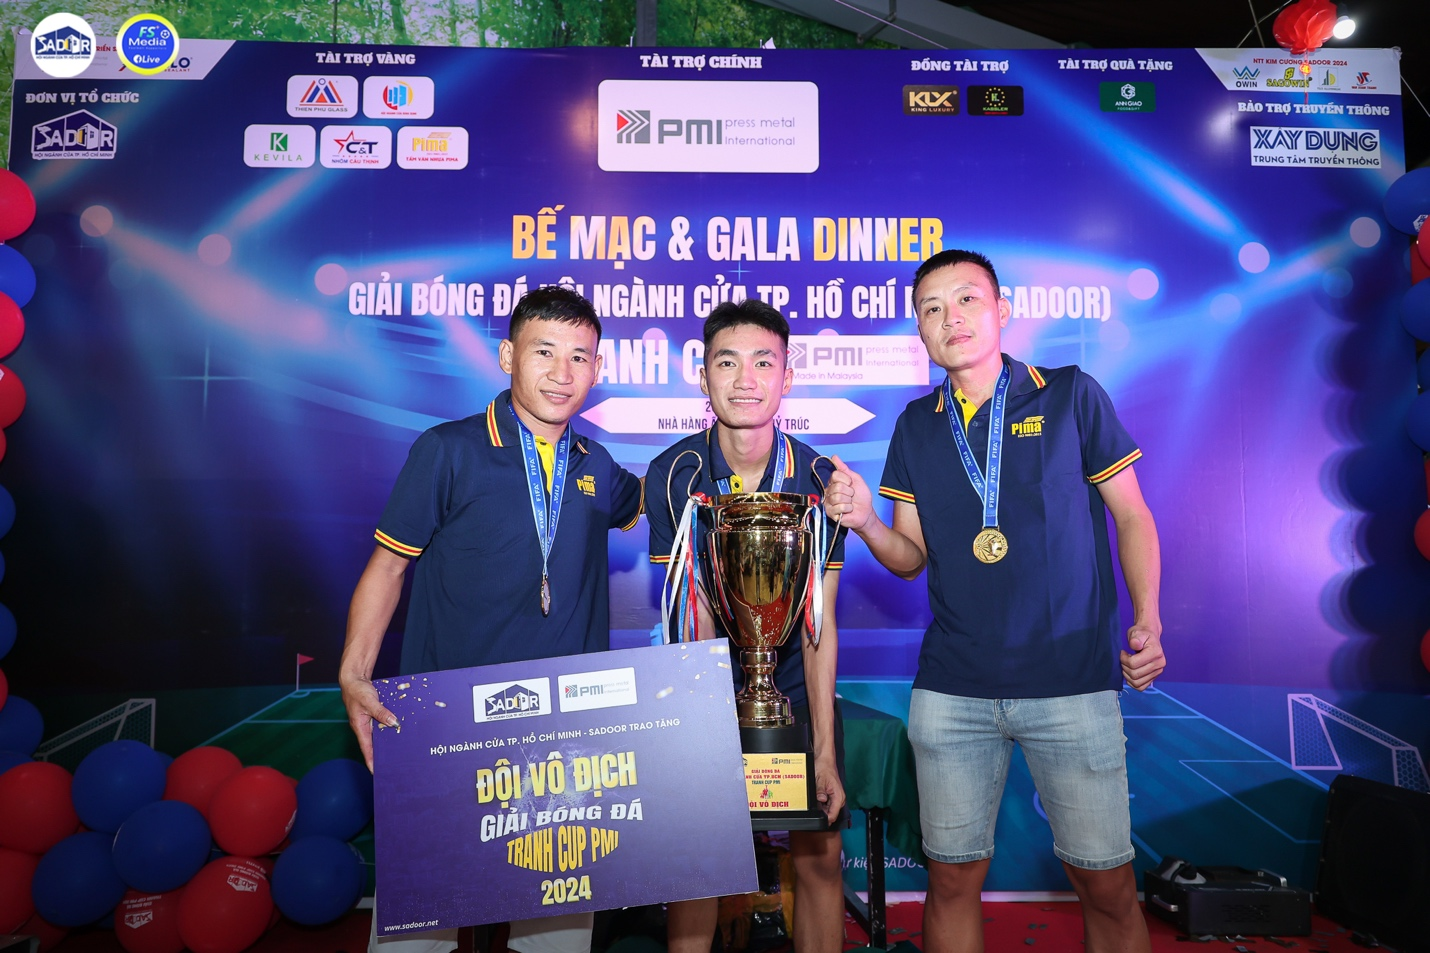 Bế mạc và trao giải Giải bóng đá Hội ngành Cửa Thành phố Hồ Chí Minh tranh cup PMI lần 1 năm 2024